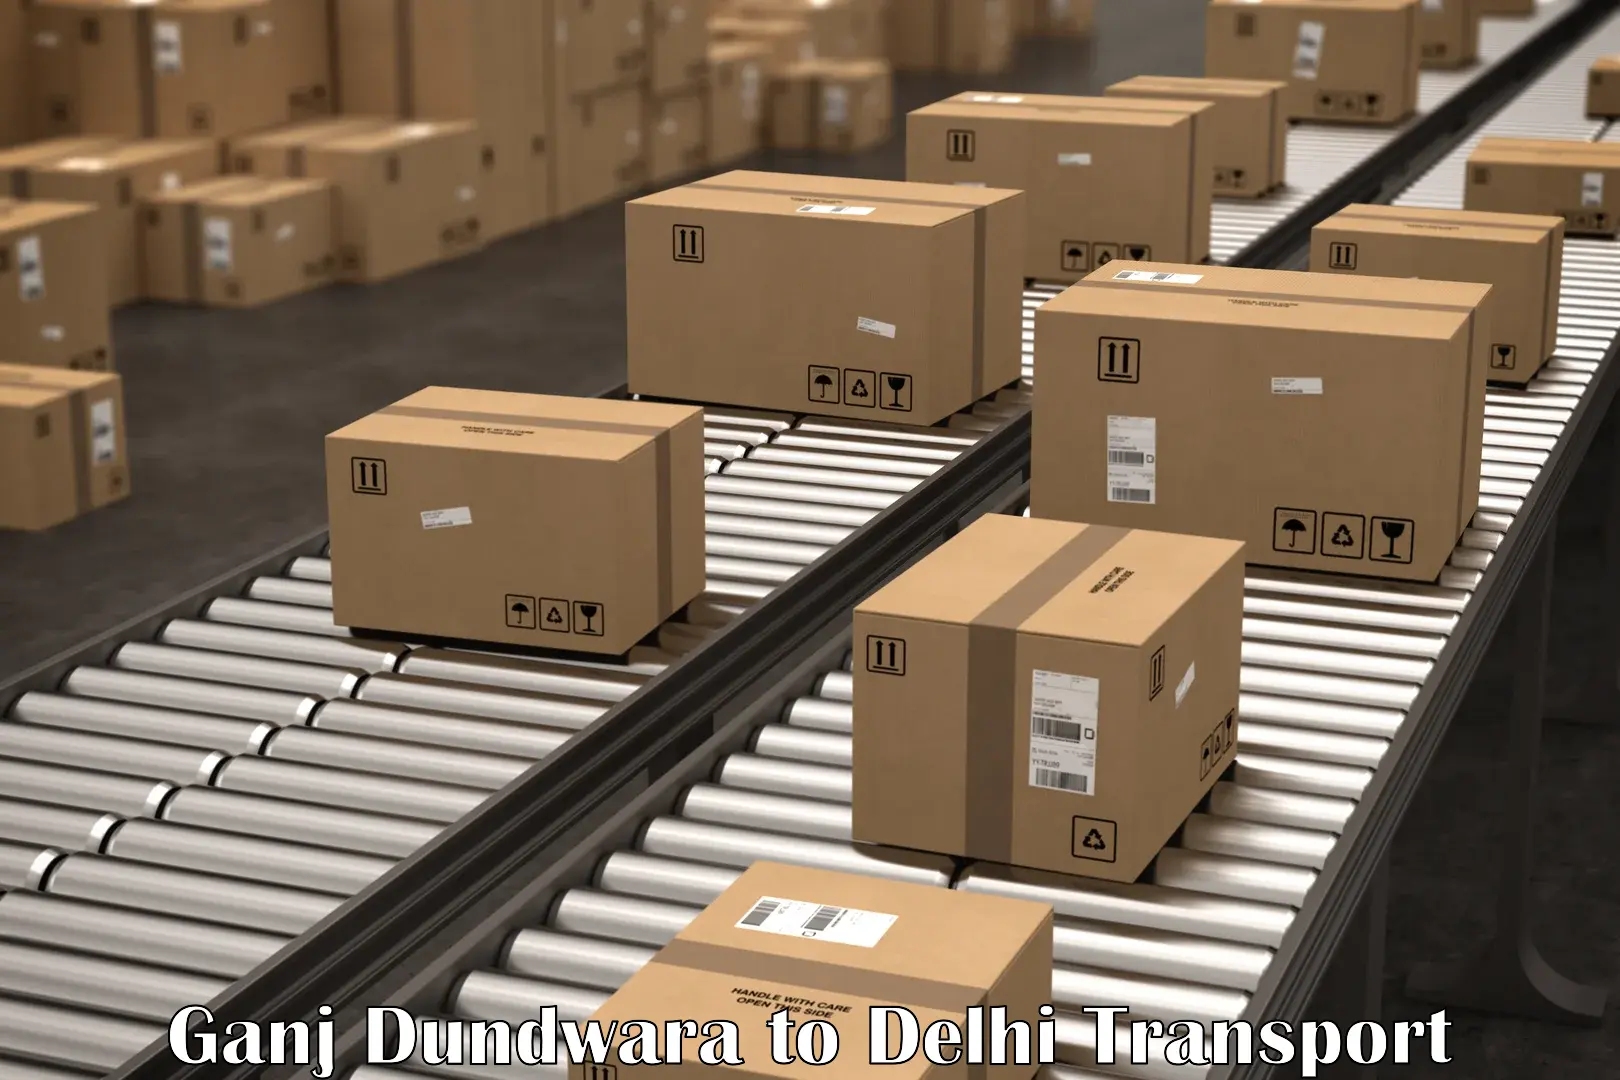 Air cargo transport services in Ganj Dundwara to Delhi